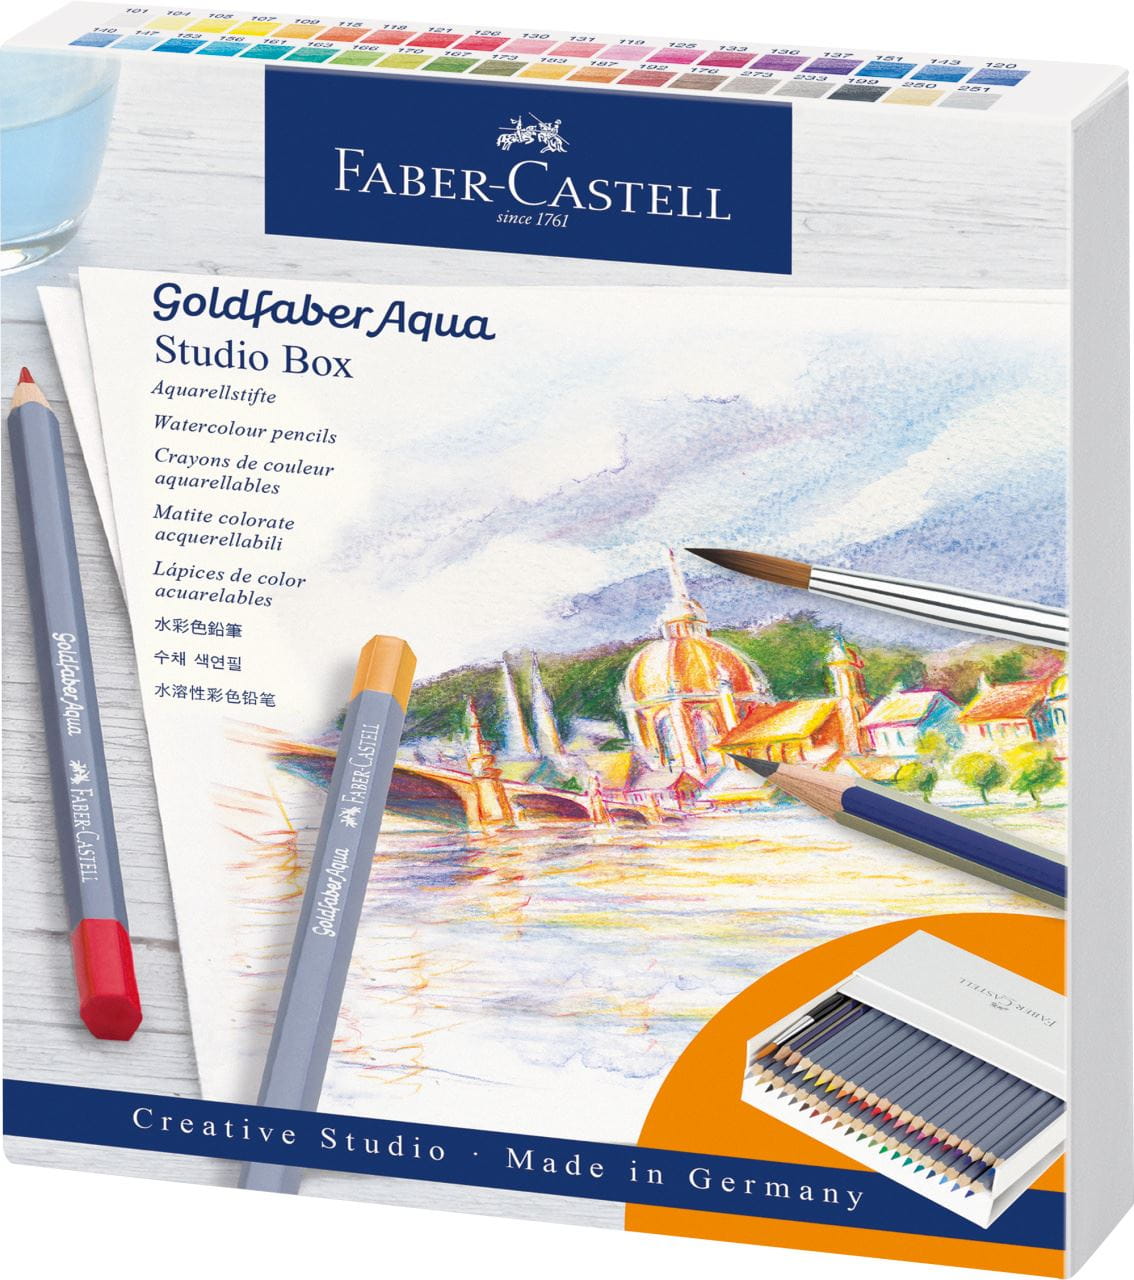 Faber-Castell - Goldfaber Aqua Aquarellstift, Studiobox